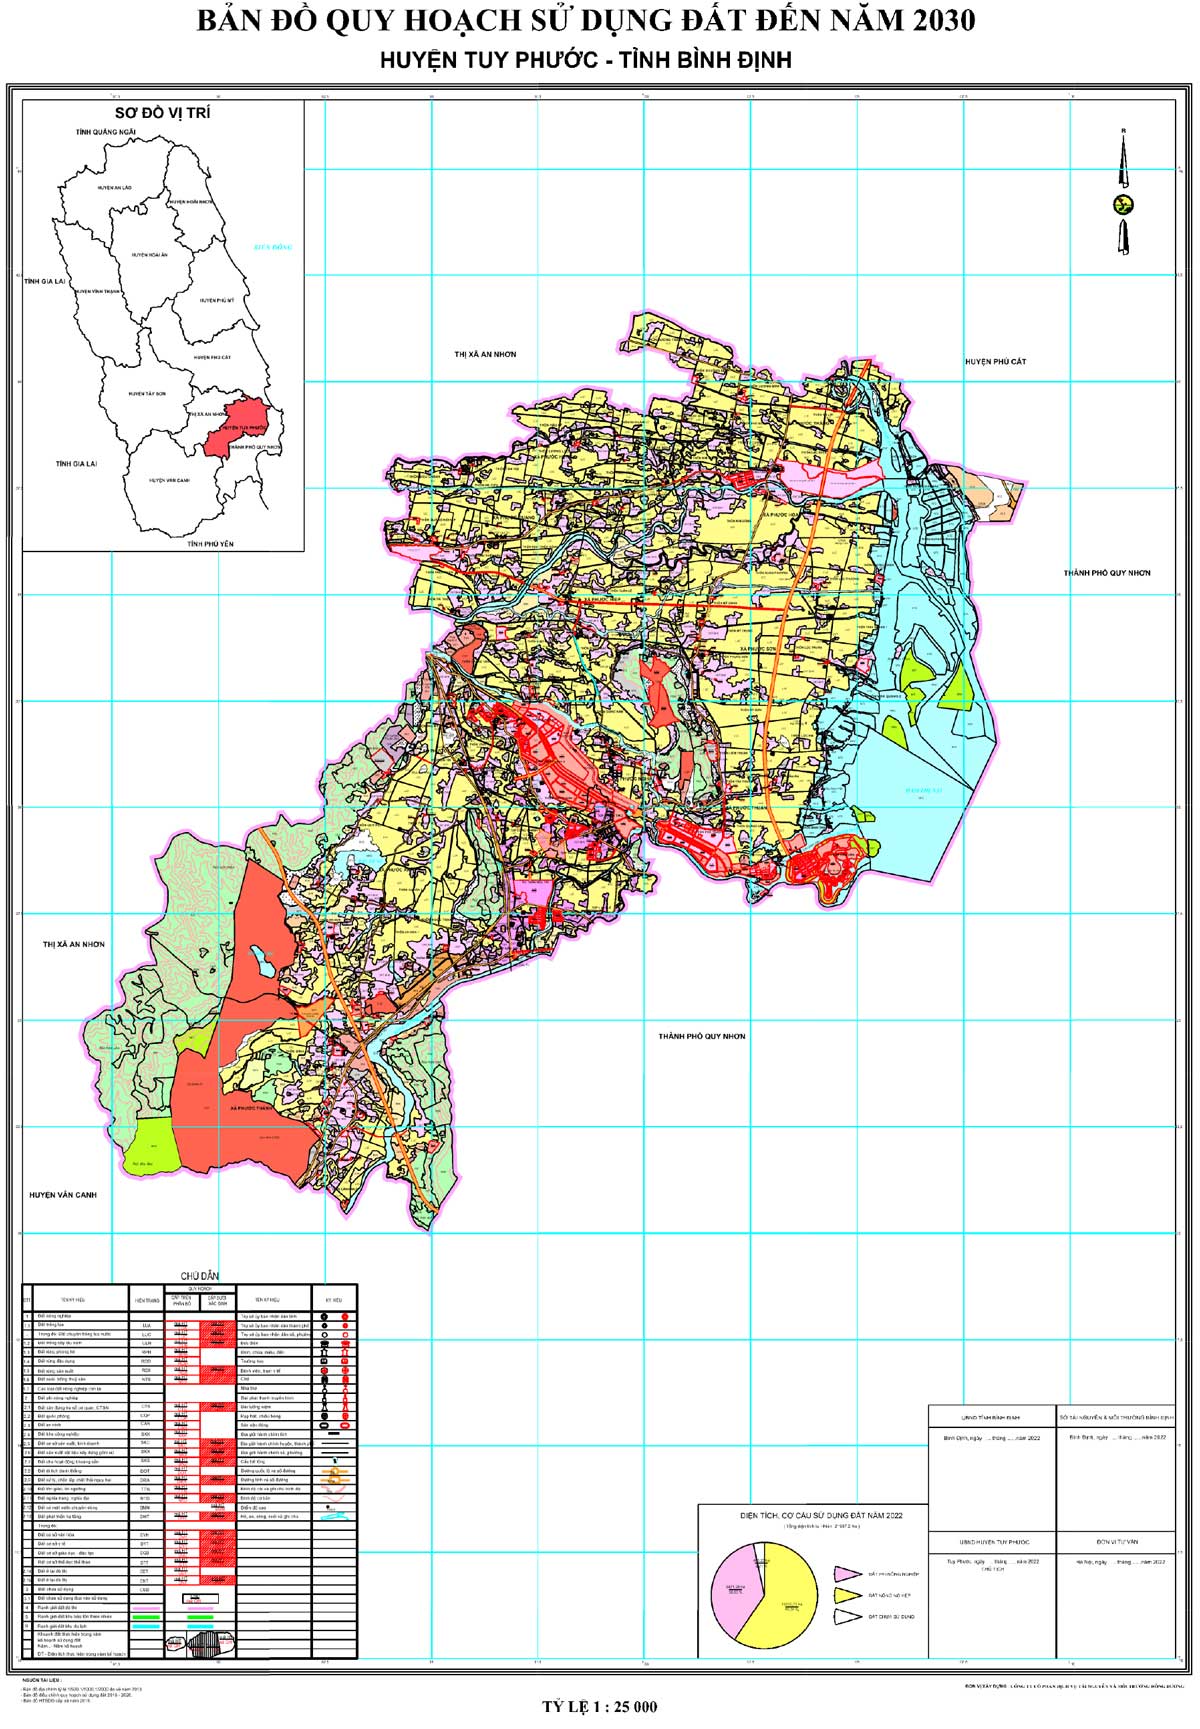 Bản đồ QHSDĐ huyện Tuy Phước đến năm 2030